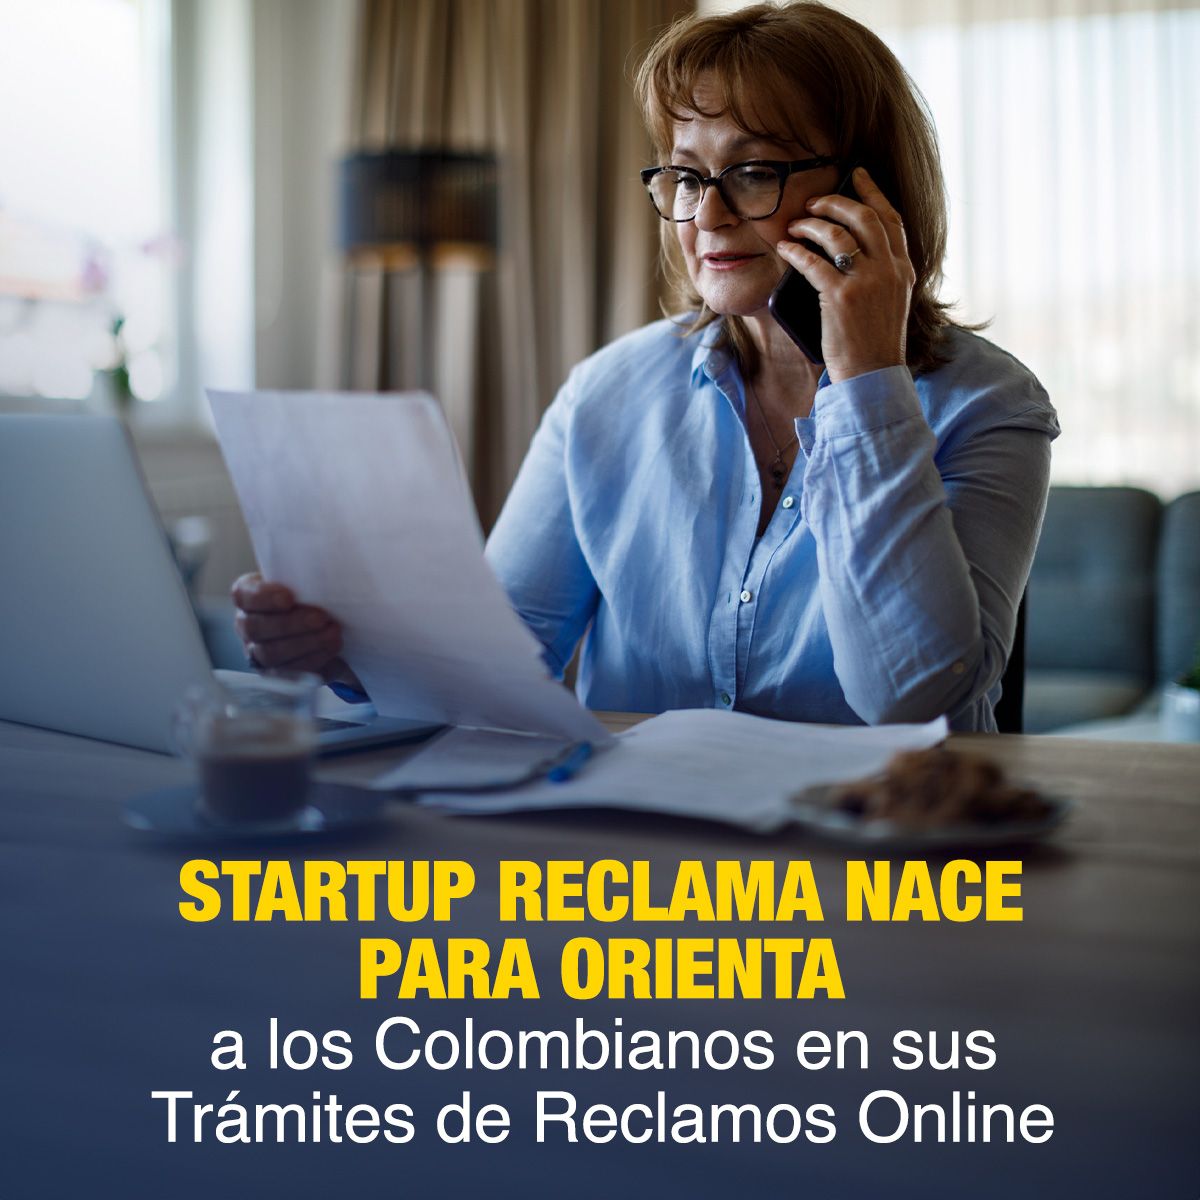 StartUp Reclama Nace para Orientar a los Colombianos en sus Trámites de Reclamos Online